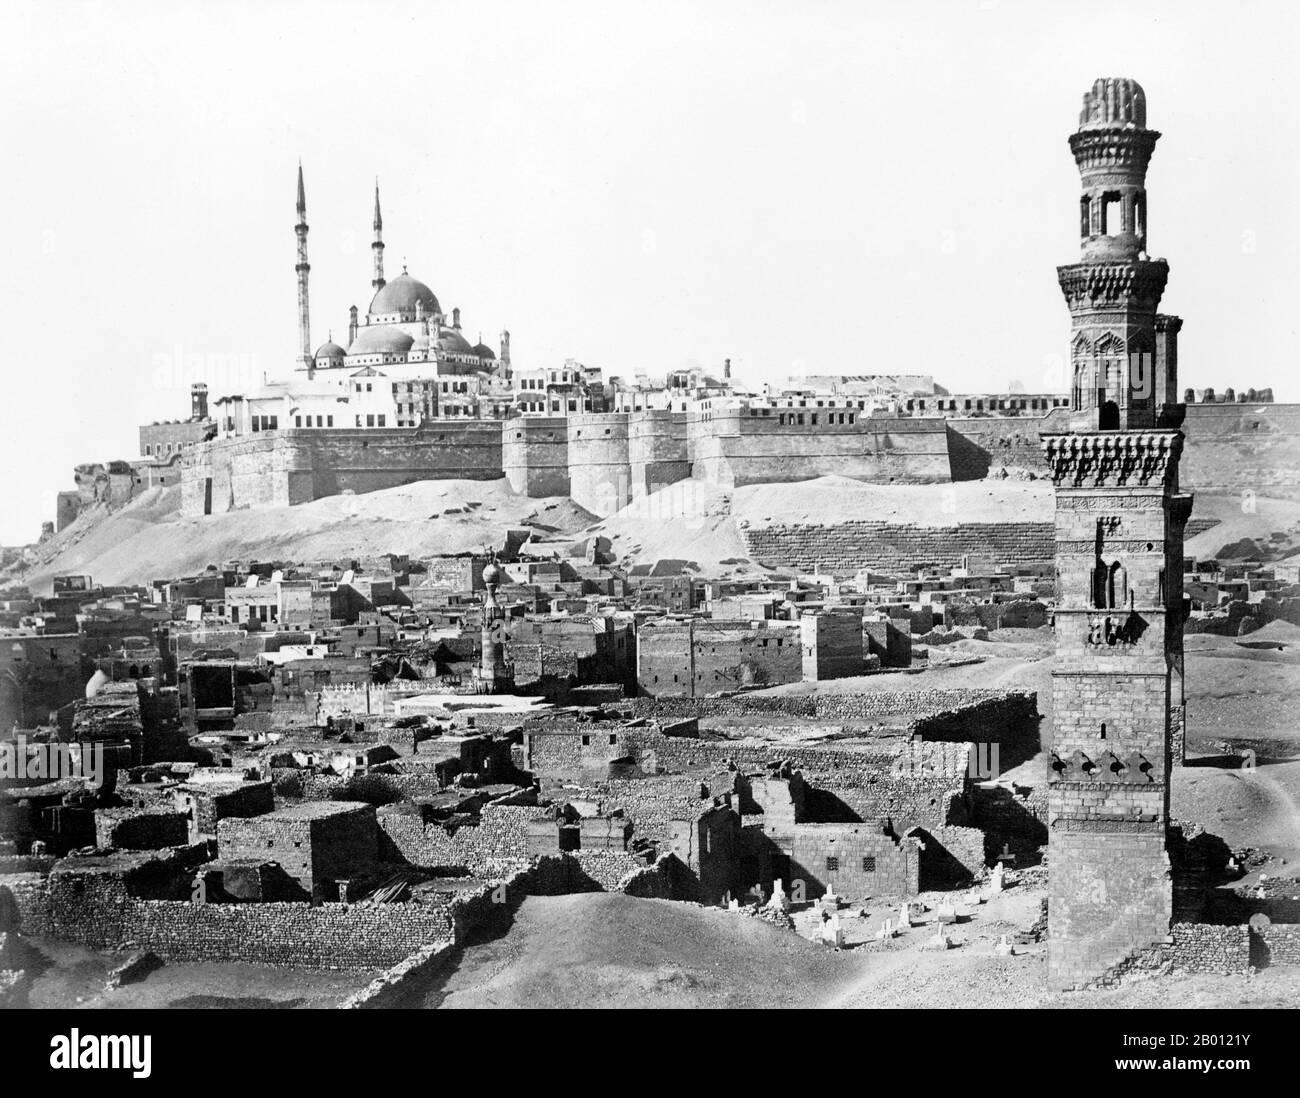 Egypte: La Citadelle de Saladin, le Caire (arabe: Qala 'à Salah ad-DIN). Photo d'Antonio Beato (1835-1906), c. 1870-1890. La Citadelle de Saladin du Caire est une fortification islamique médiévale au Caire, en Égypte. L'emplacement, qui fait partie de la colline de Muqattam près du centre du Caire, était autrefois célèbre pour sa brise fraîche et sa vue magnifique sur la ville. C'est maintenant un site historique préservé, avec des mosquées et des musées.la Citadelle a été fortifiée par le souverain Ayyubid Salah al-DIN (Saladin) entre 1176 et 1183 ce, pour la protéger des Croisés. Banque D'Images